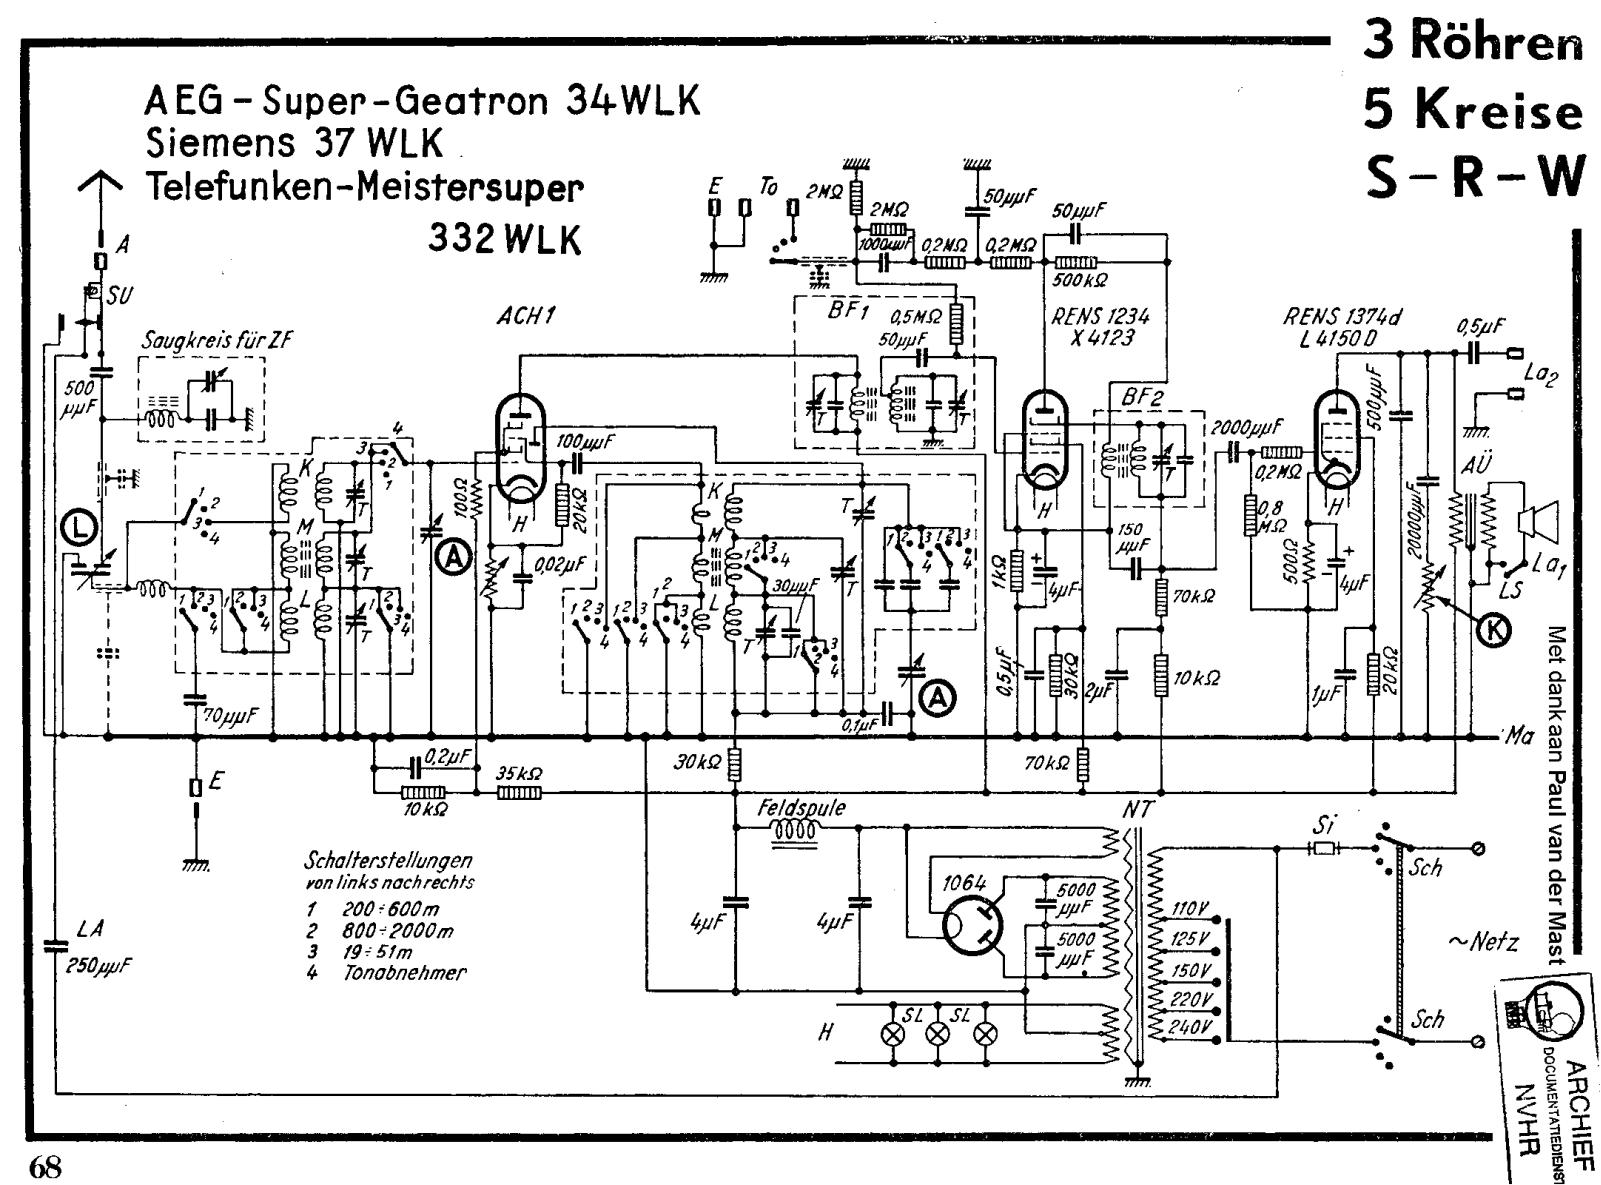 AEG 34wlk schematic